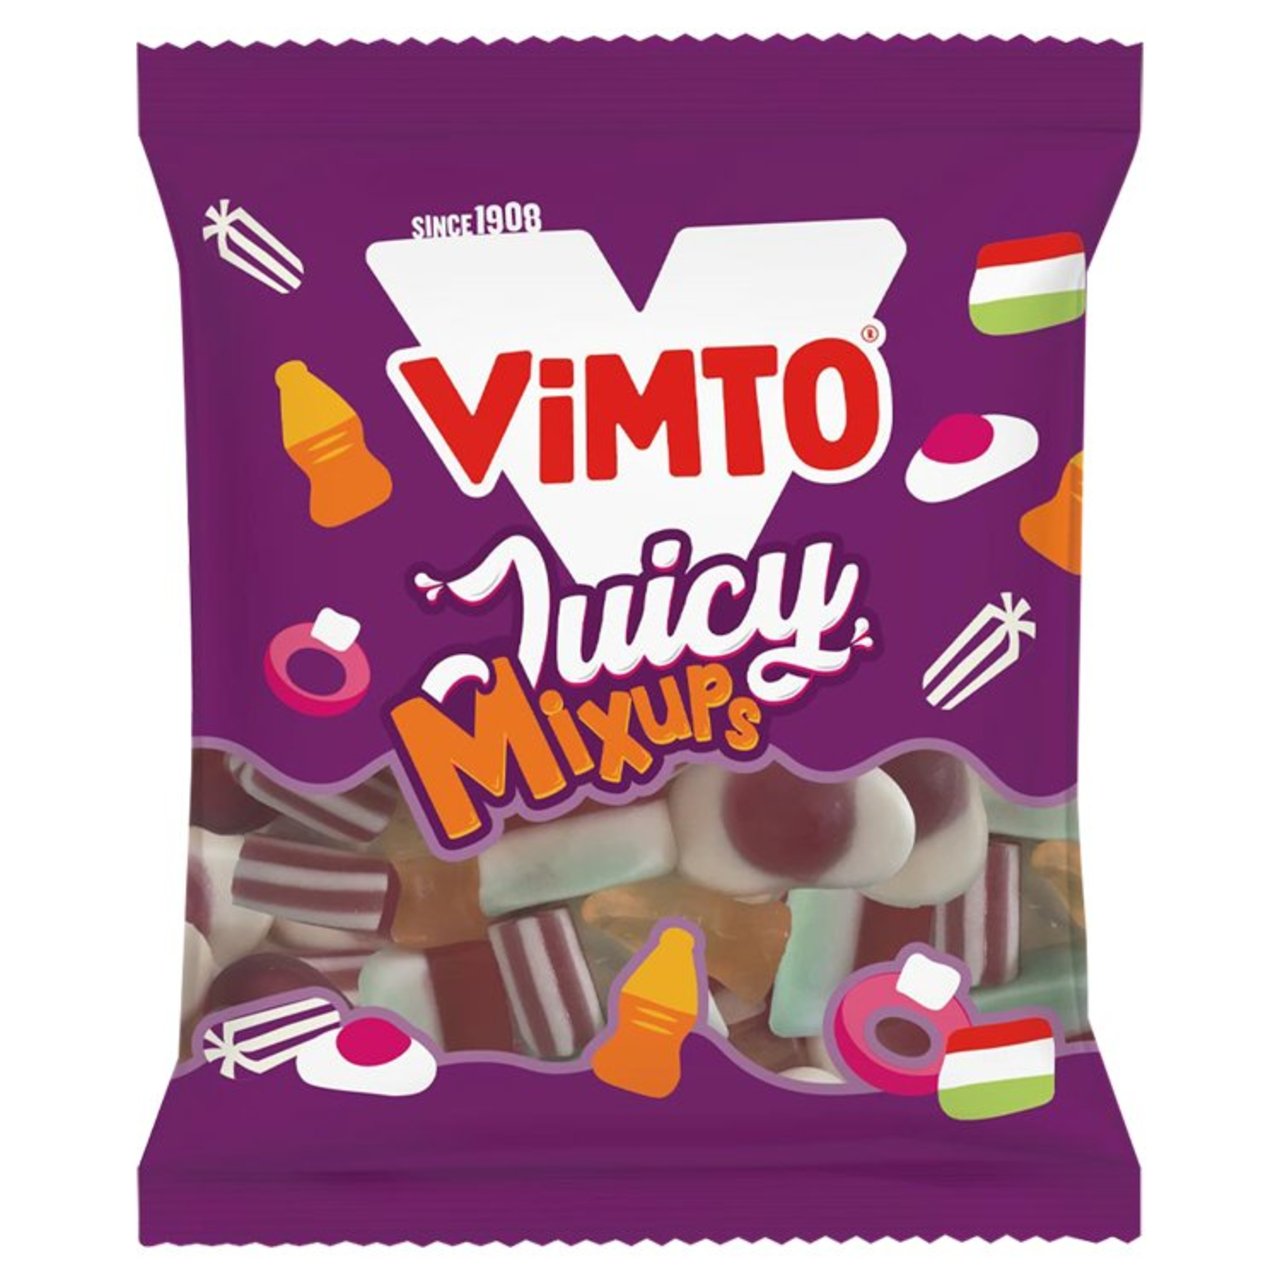 VIMTO JUICY MIXUPS 140g